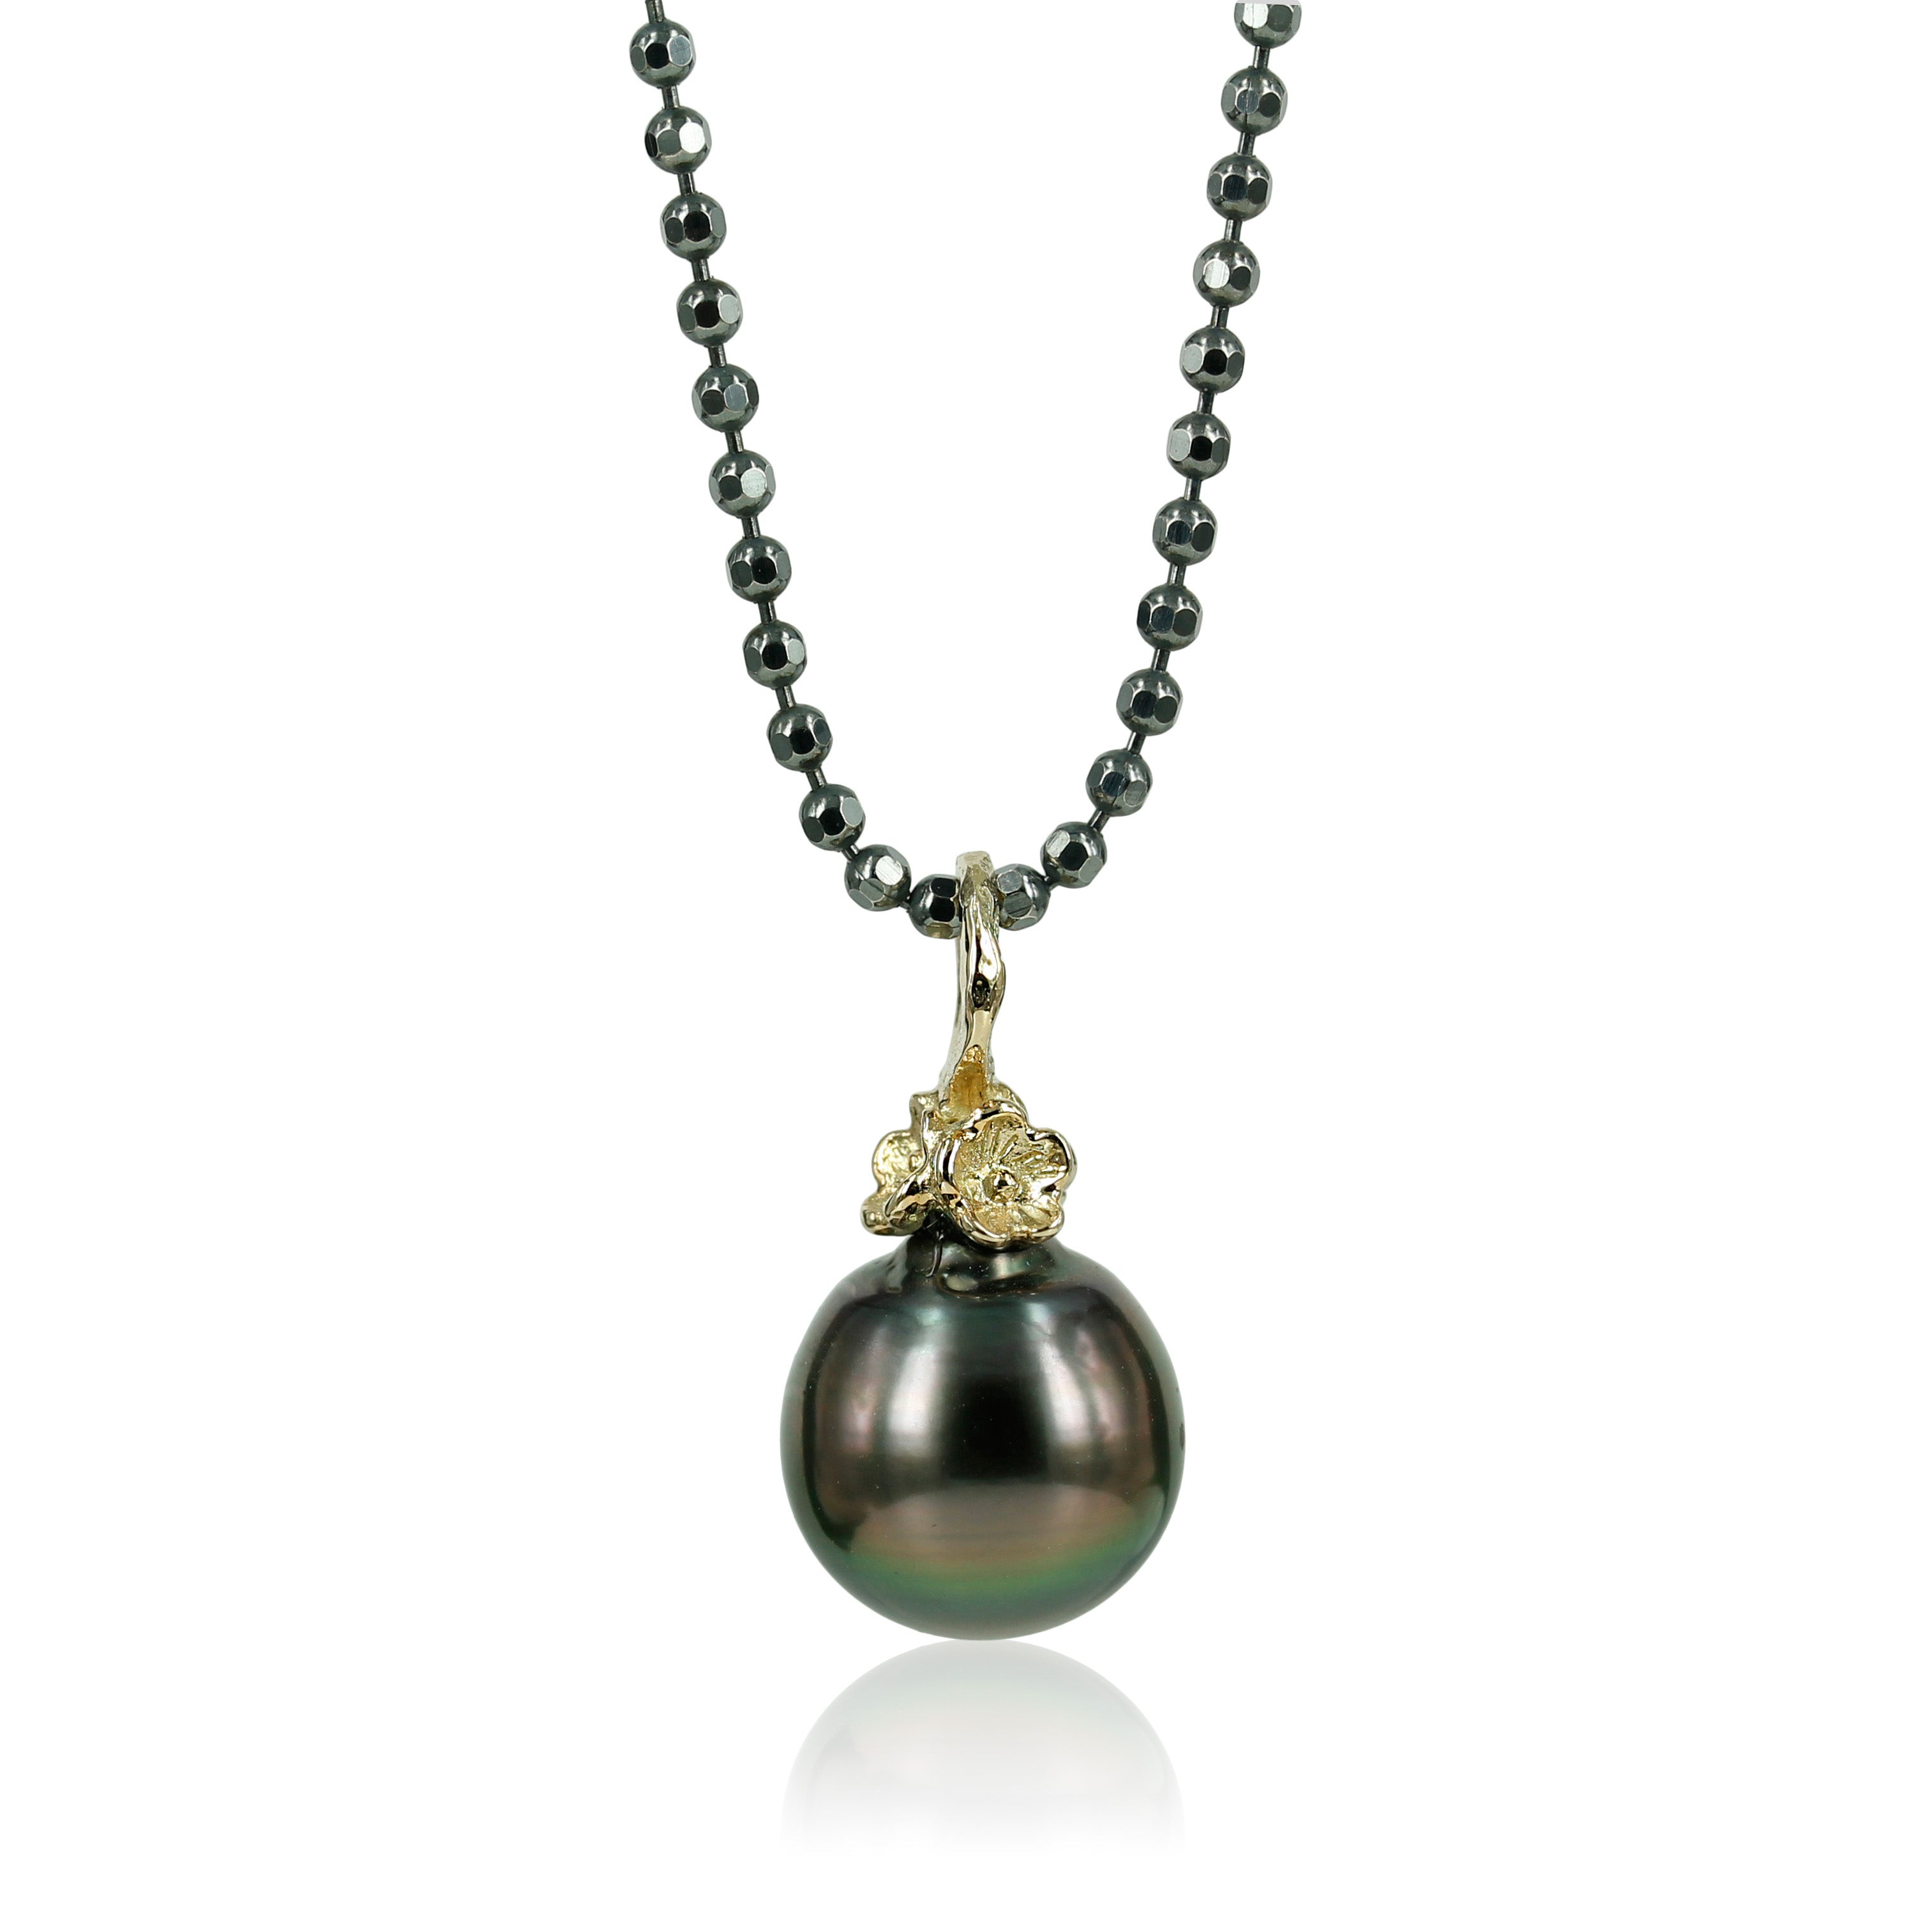 Fairytale  -14 kt. guld med Tahiti perle   Perlevedhæng i 14 kt. guld og smuk tahiti perle.  Smukke blomster omslutter perlen som en fin detalje..